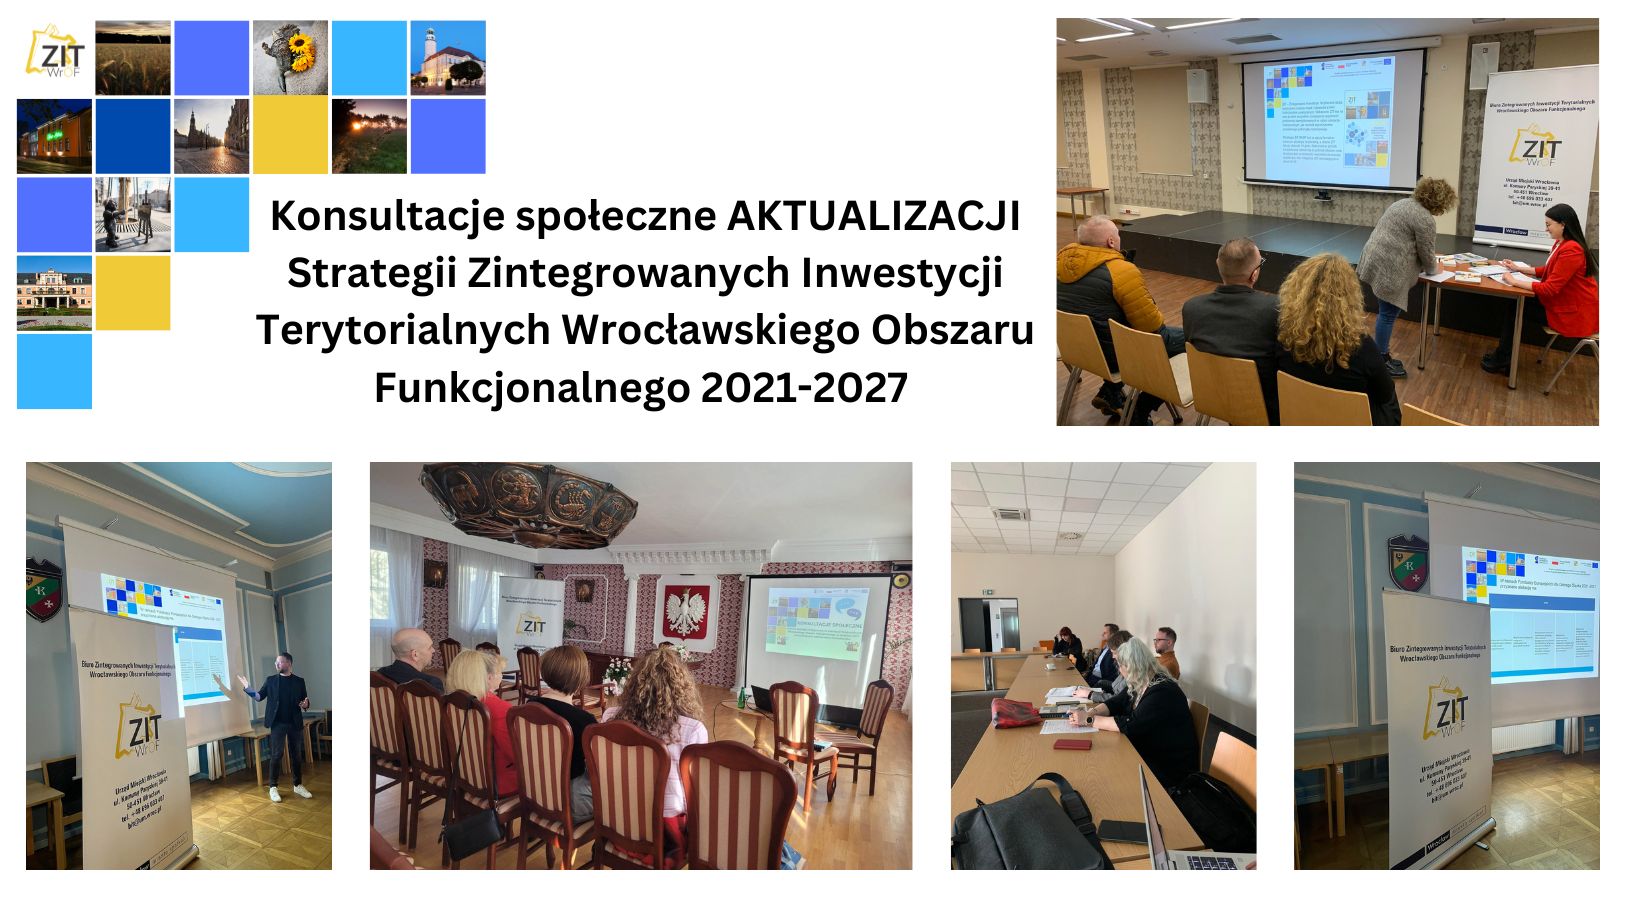 Konsultacje społeczne aktualizacji Strategii Zintegrowanych Inwestycji Terytorialnych Wrocławskiego Obszaru Funkcjonalnego na lata 2021-2027